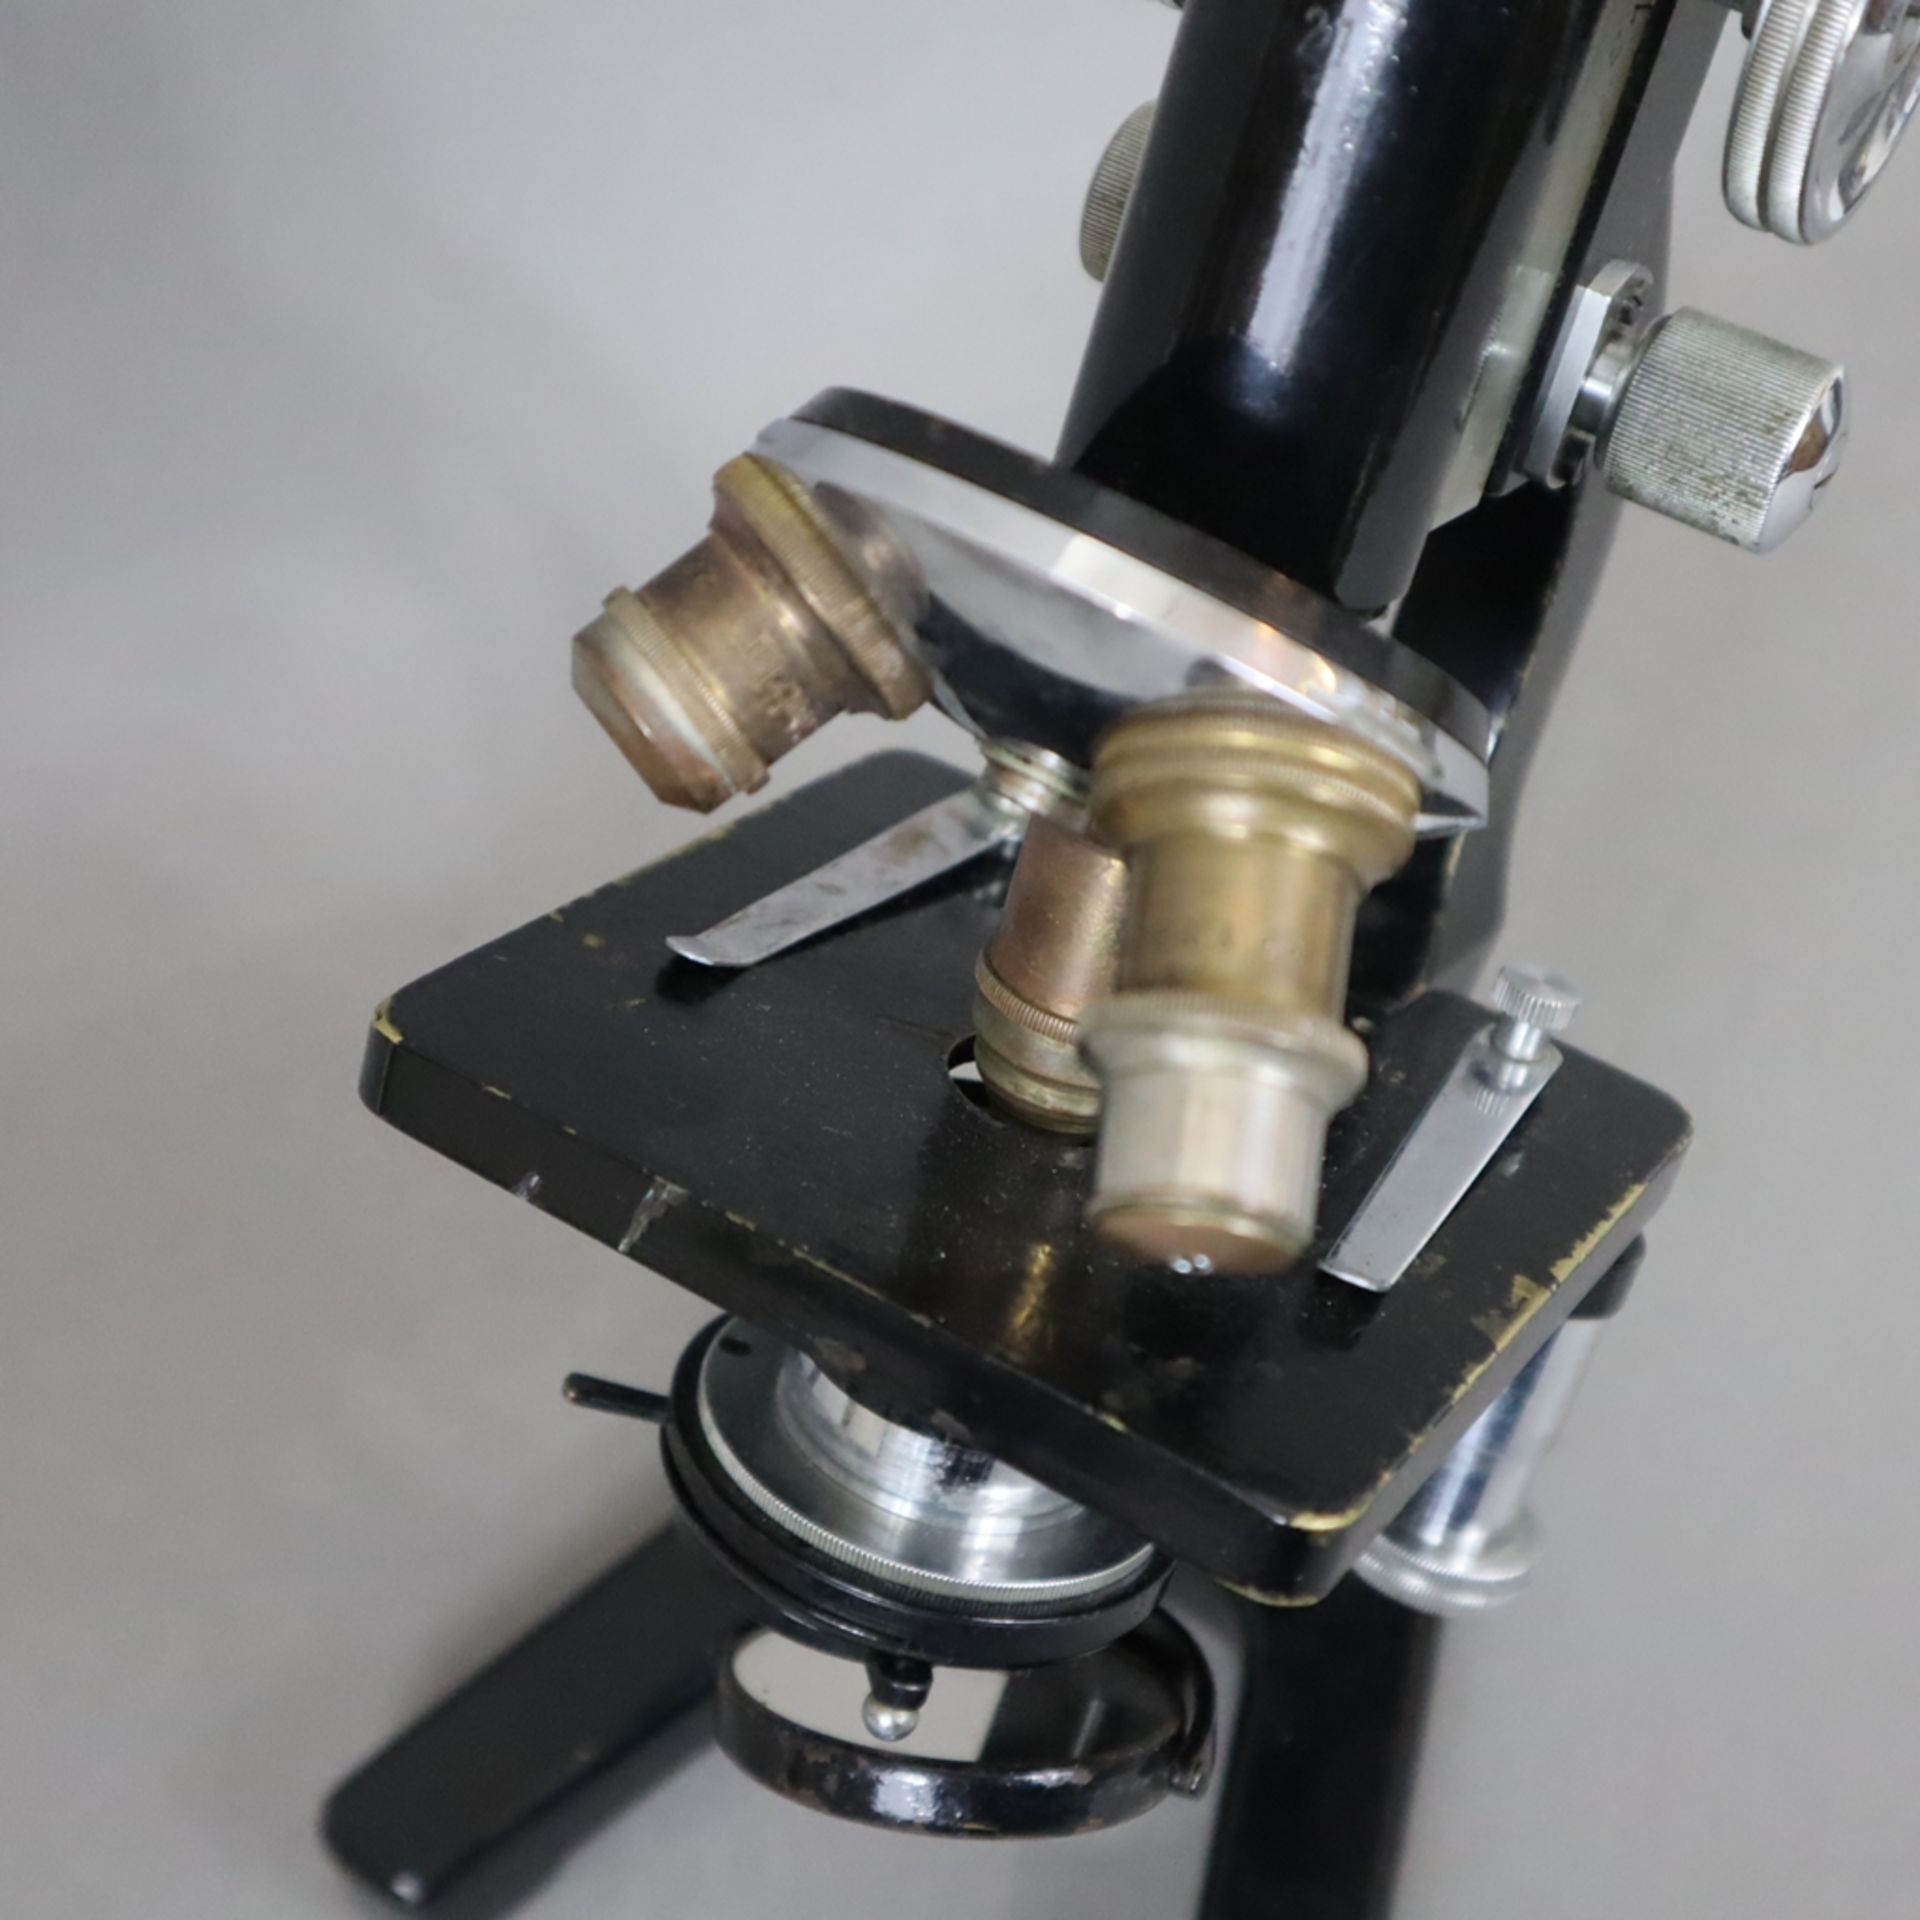 Zwei Mikroskope mit Zubehör - Ernst Leitz Wetzlar, am Tubus signiert mit Seriennummer "214567", Spi - Bild 3 aus 9